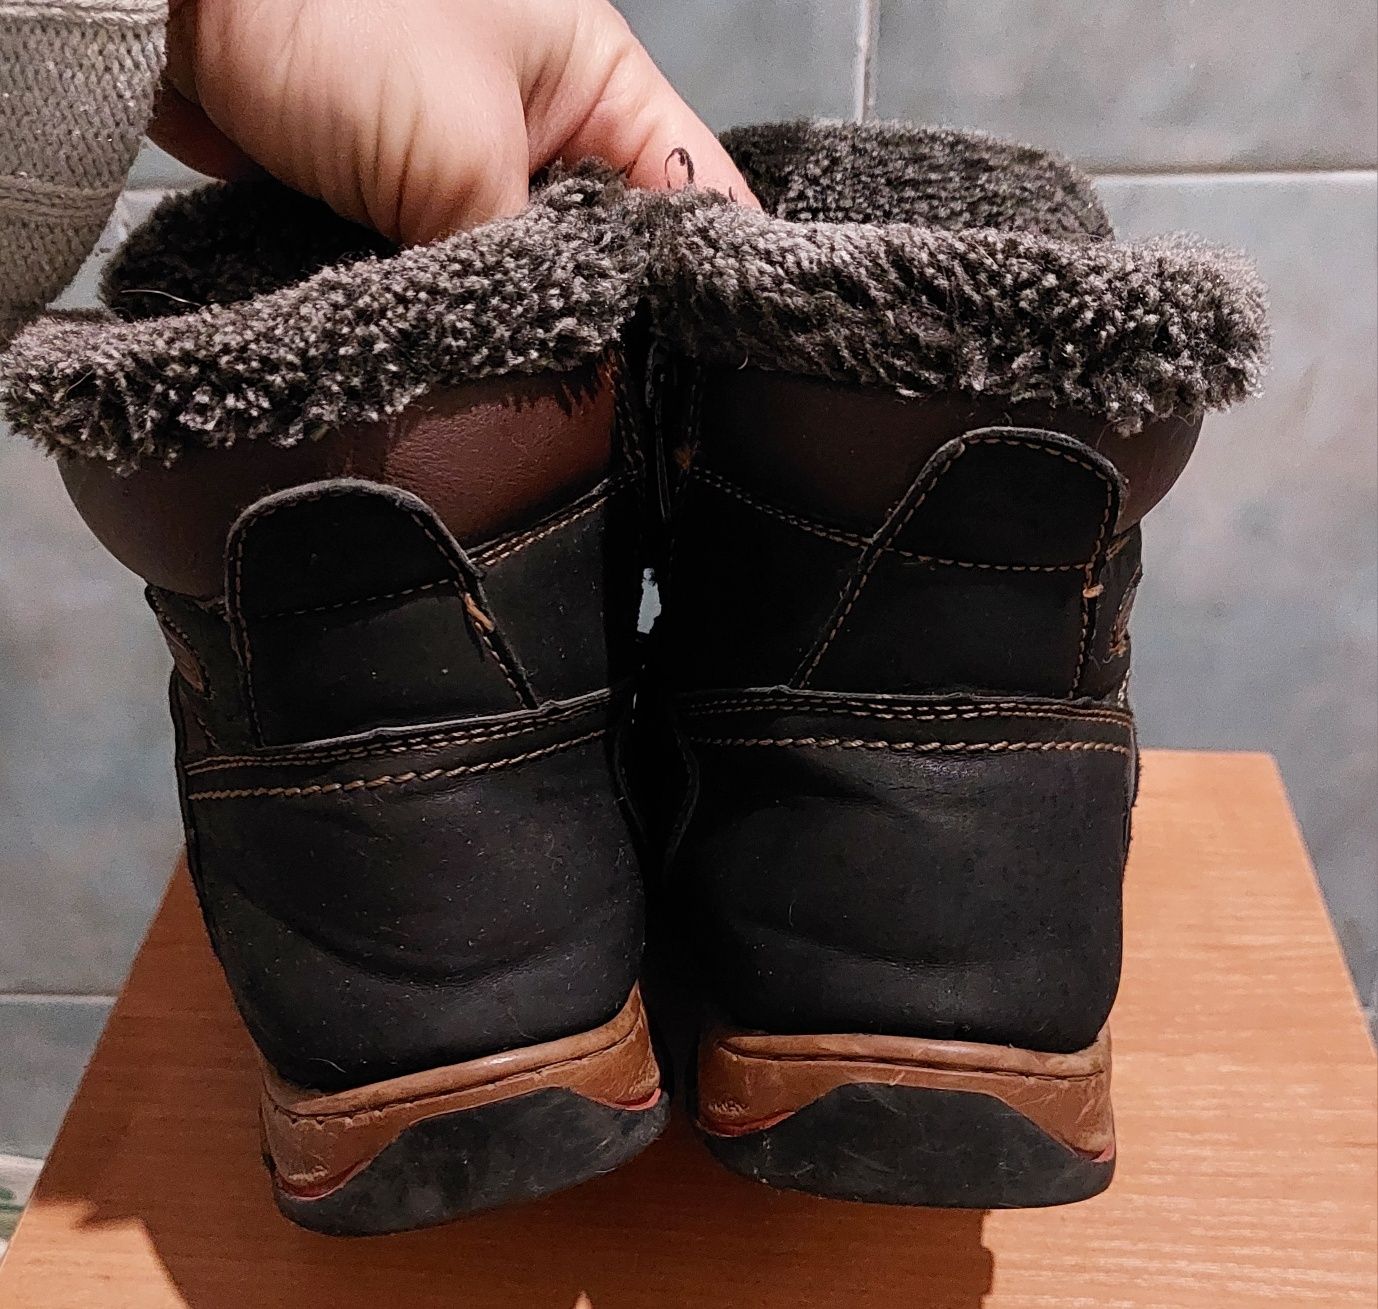 зимние детские ботинки paliment, размер 34. Состояние хорошее